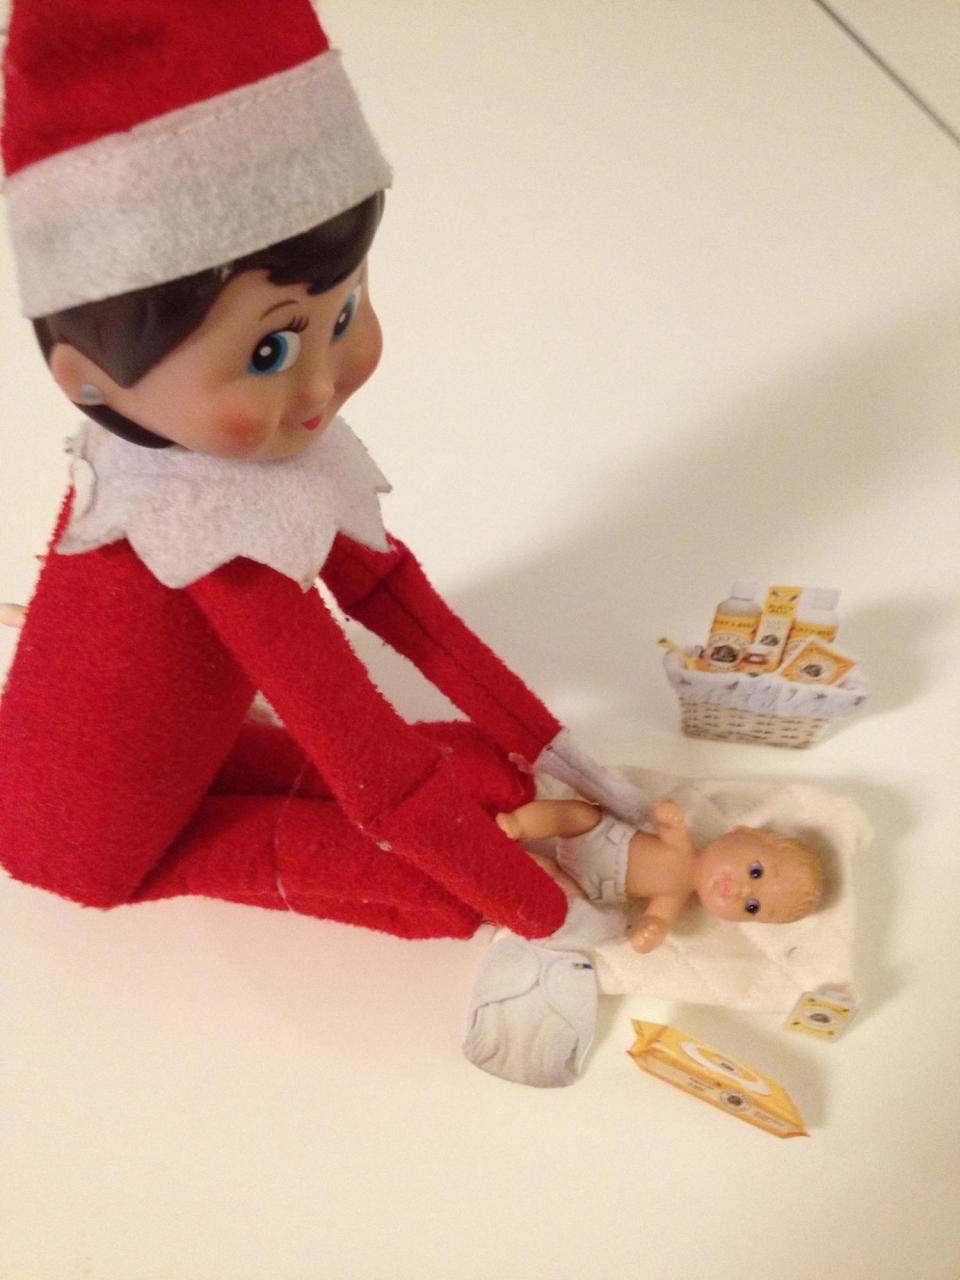 The Elf changes baby doll diapers!  (Lexie Van Winkle)